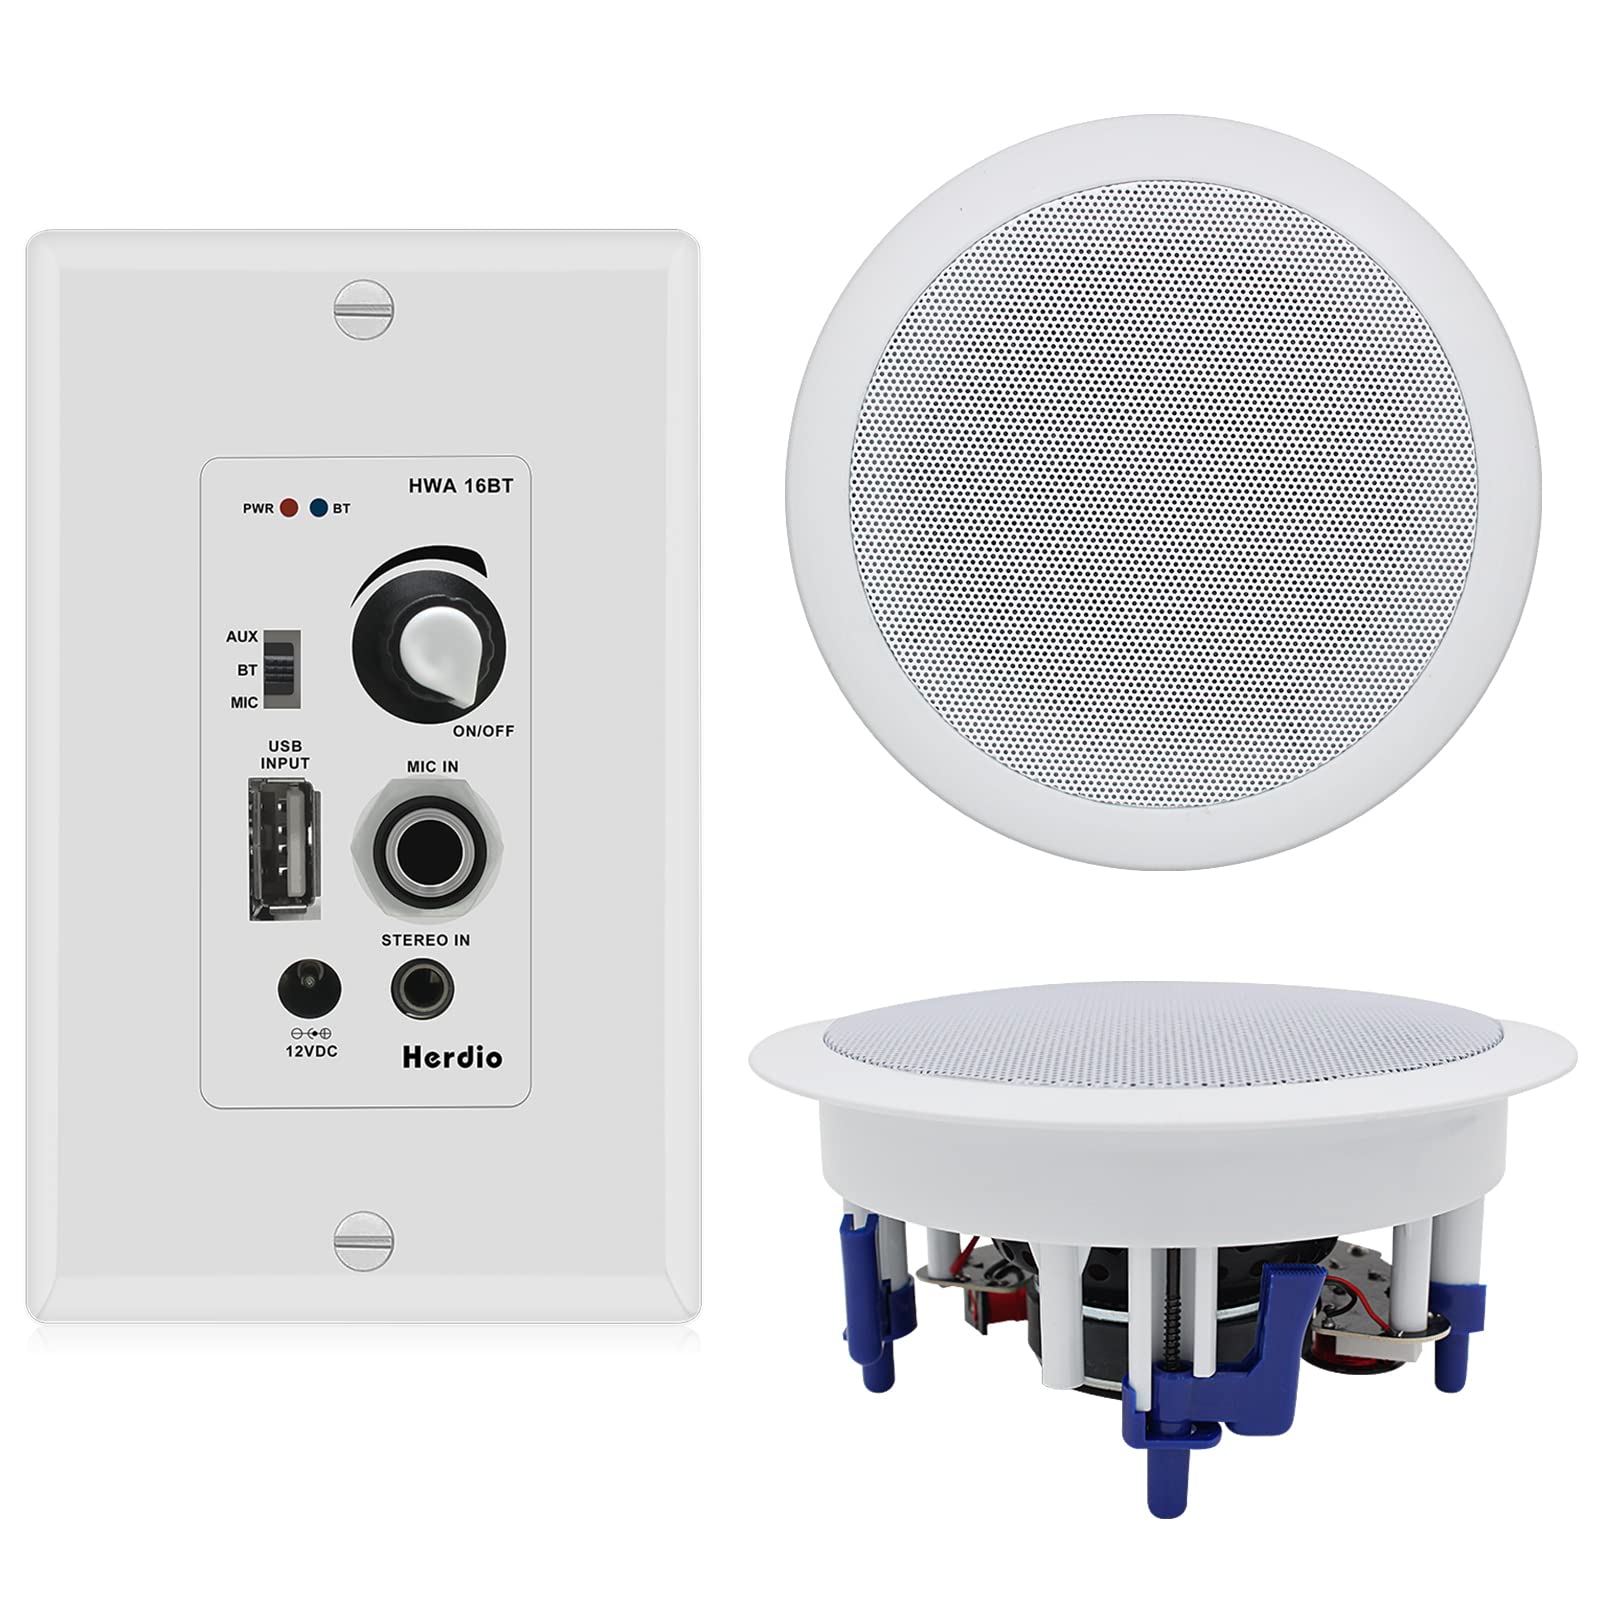  Herdio Home Audio Package Système de récepteur amplificateur mural avec 300 W au plafond Haut-parleurs passifs muraux parfaits pour Home Cinéma Bureau Salle de bain Cuisine Salon Compatible avec...